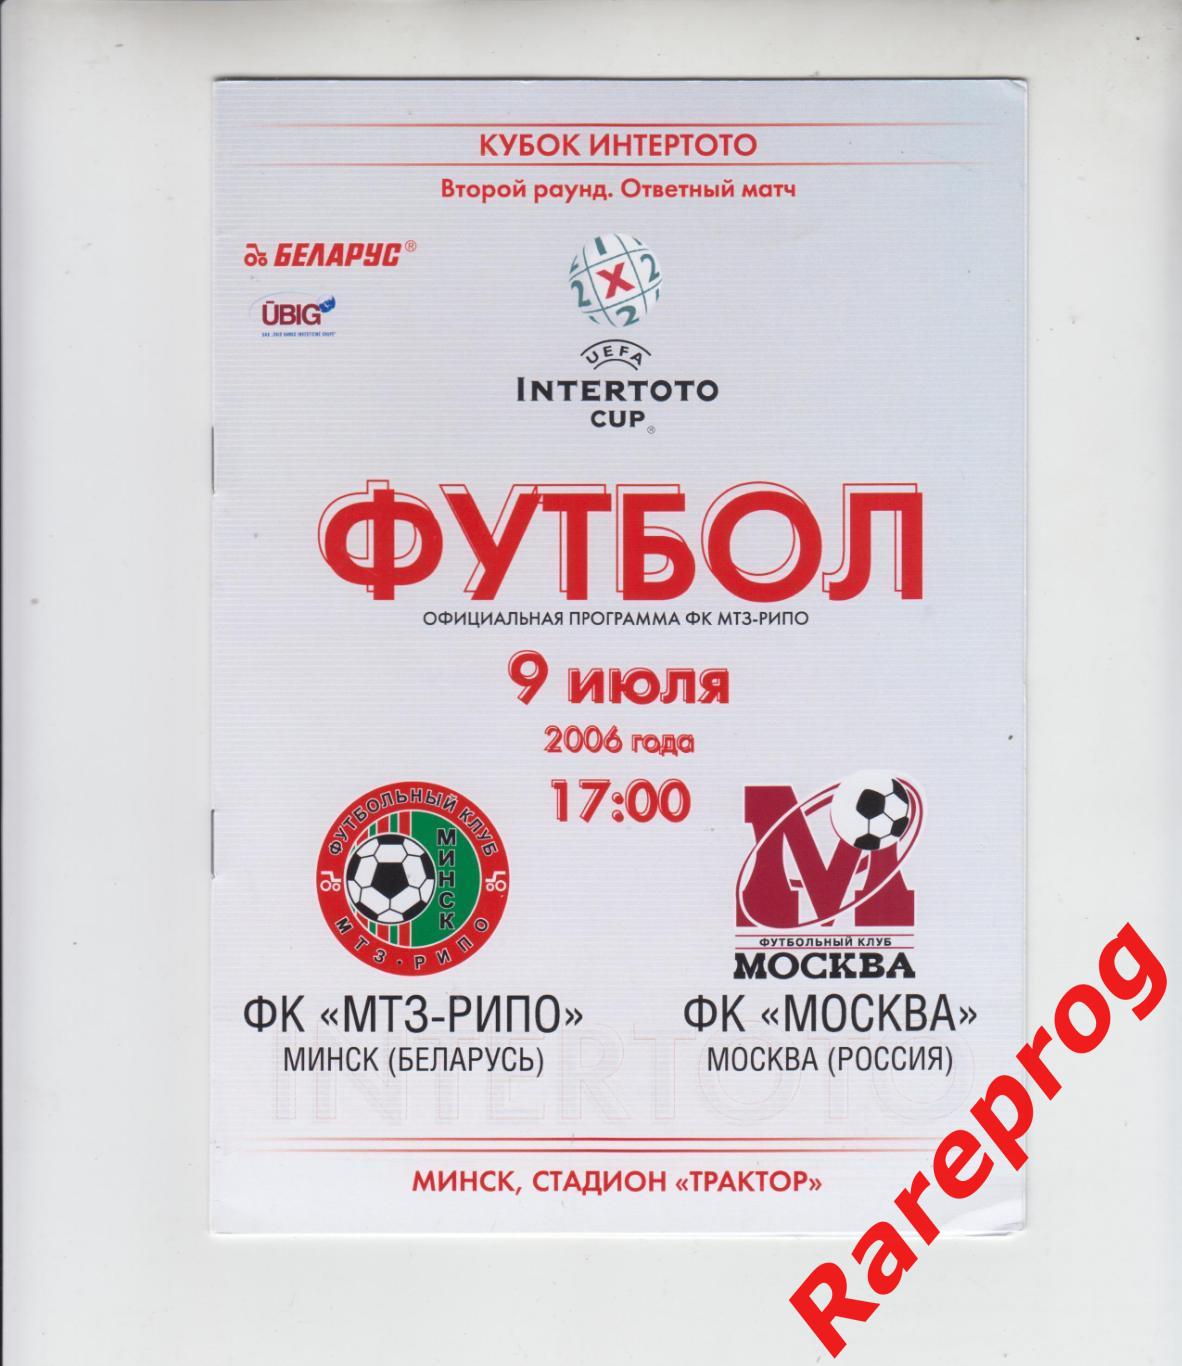 МТЗ - РИПО Беларусь - ФК Москва Россия 2006 кубок Интертото УЕФА